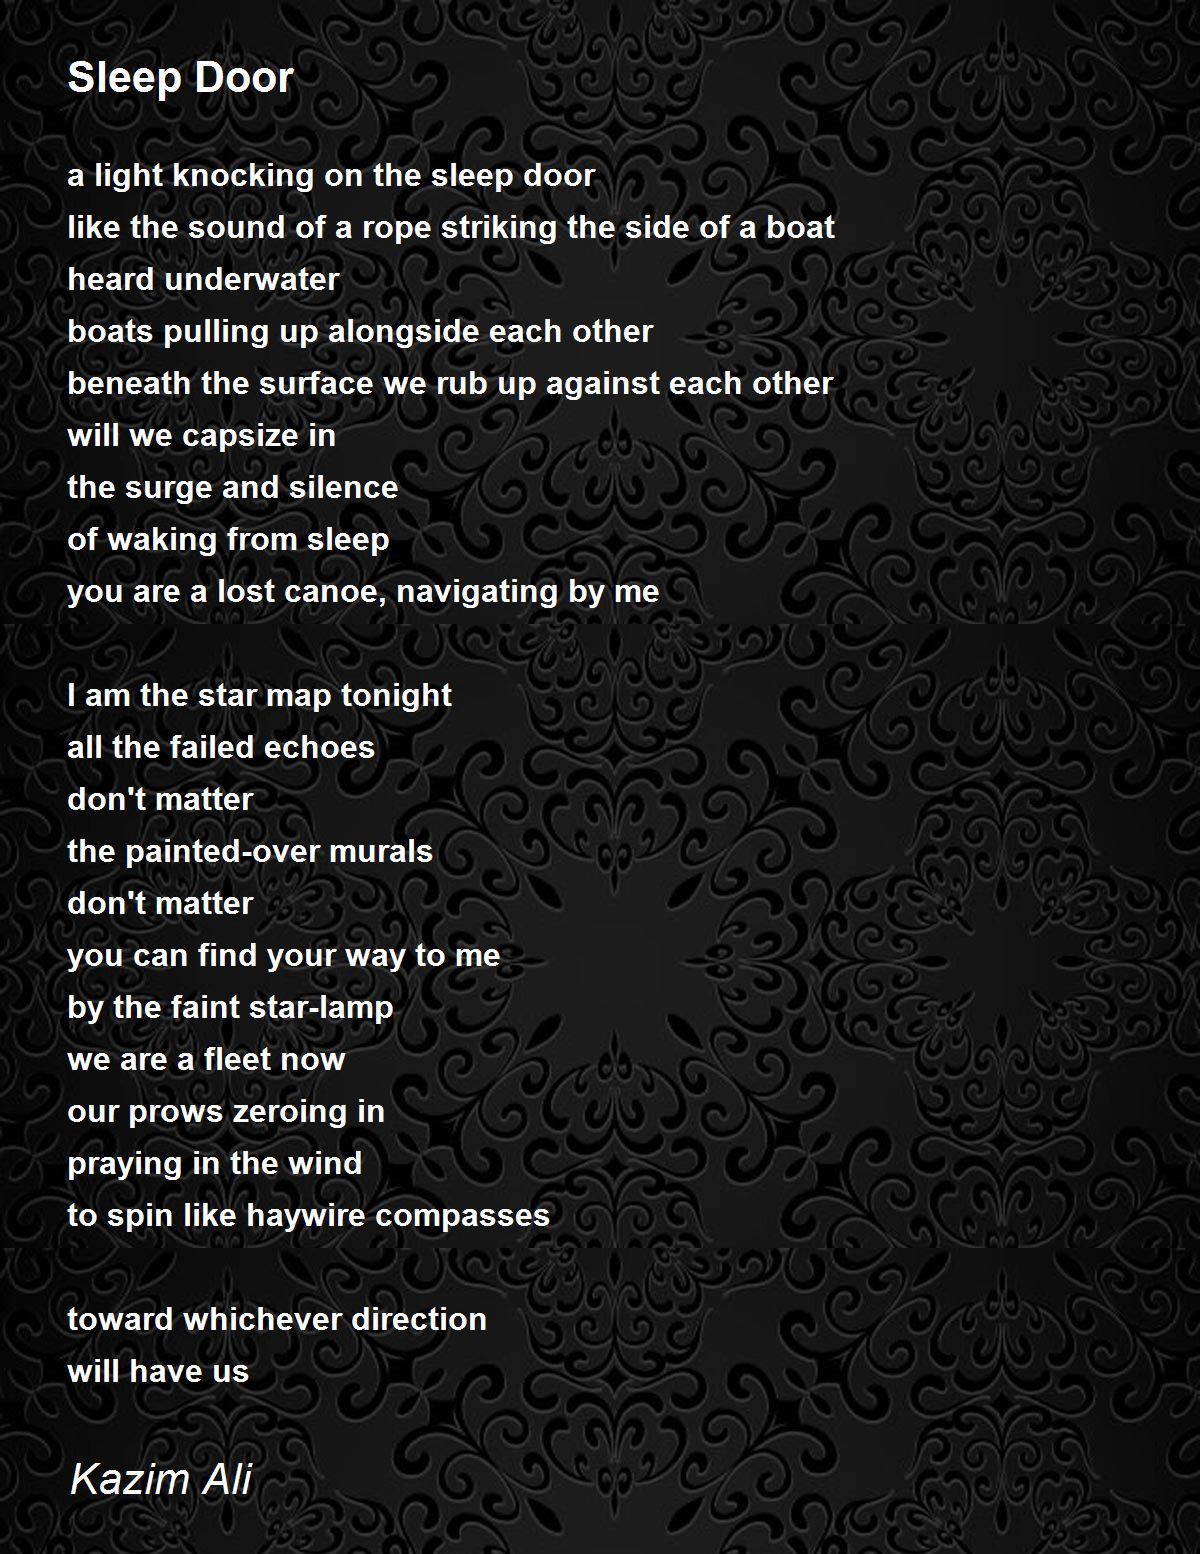 Sleep Door - Sleep Door Poem by Kazim Ali